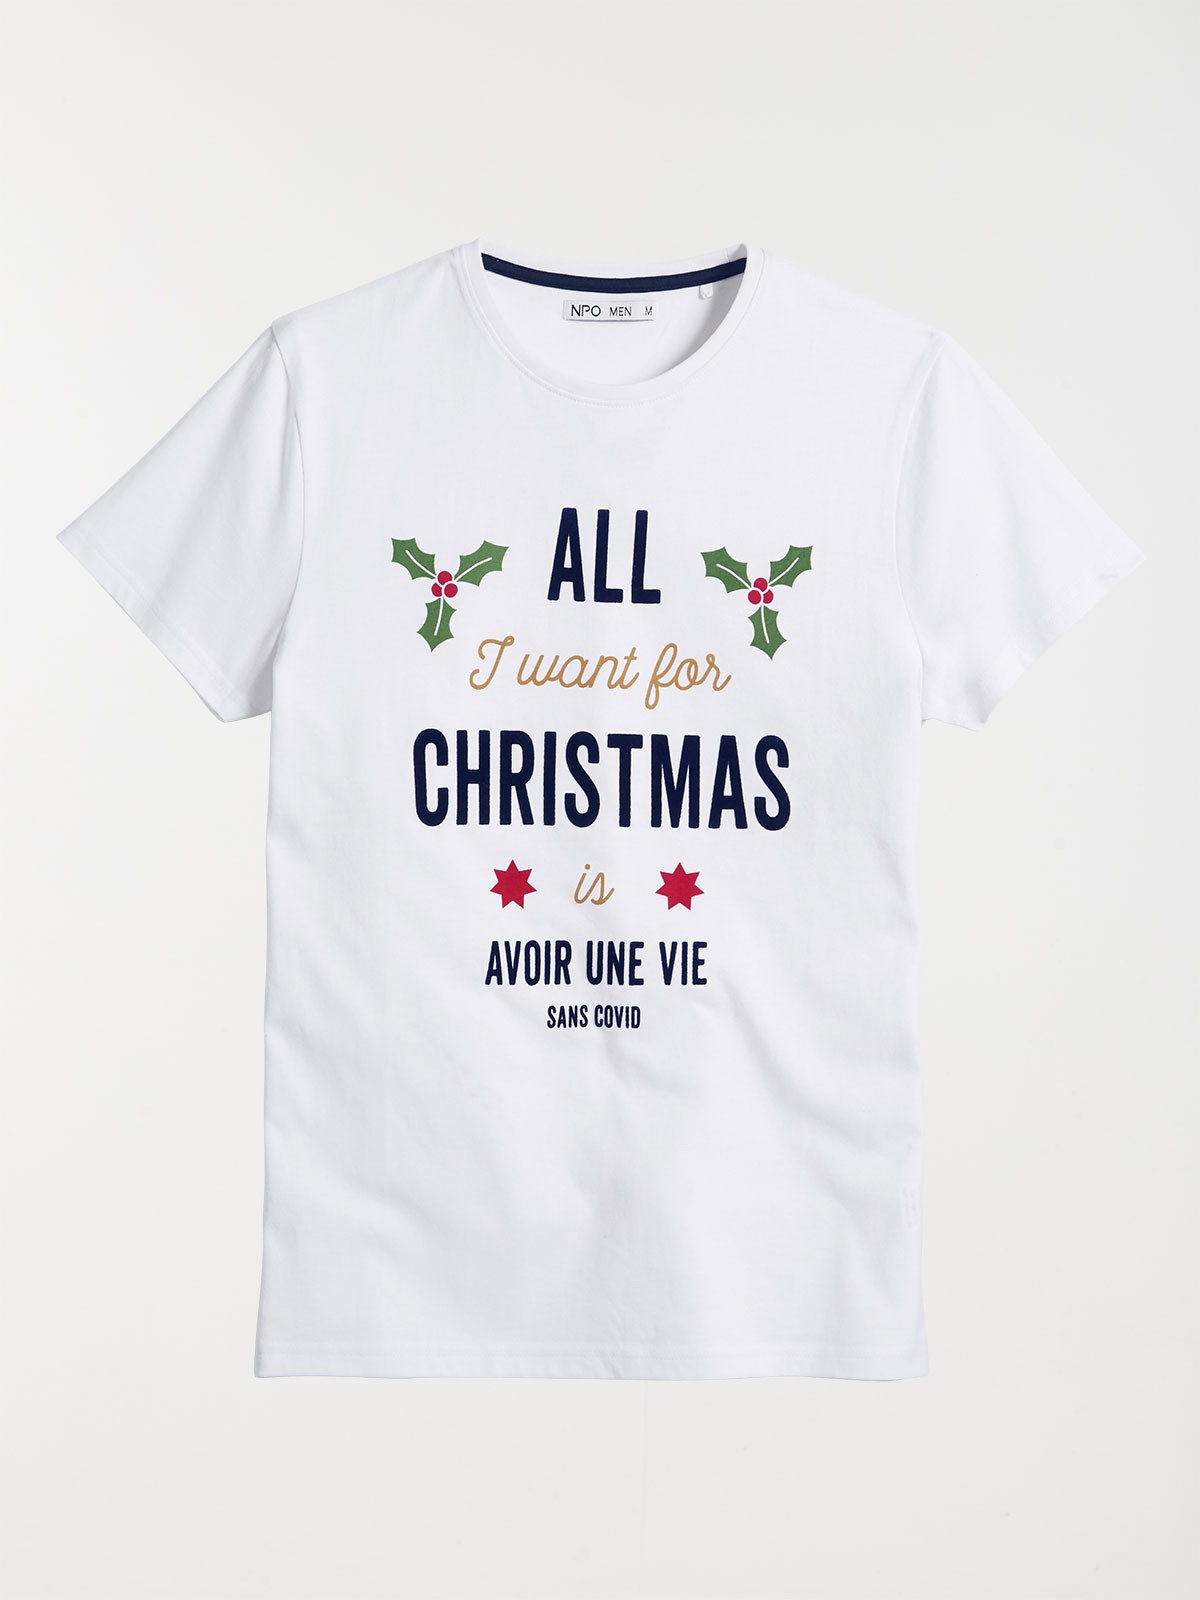 T-shirt homme NOEL Merry Christmas